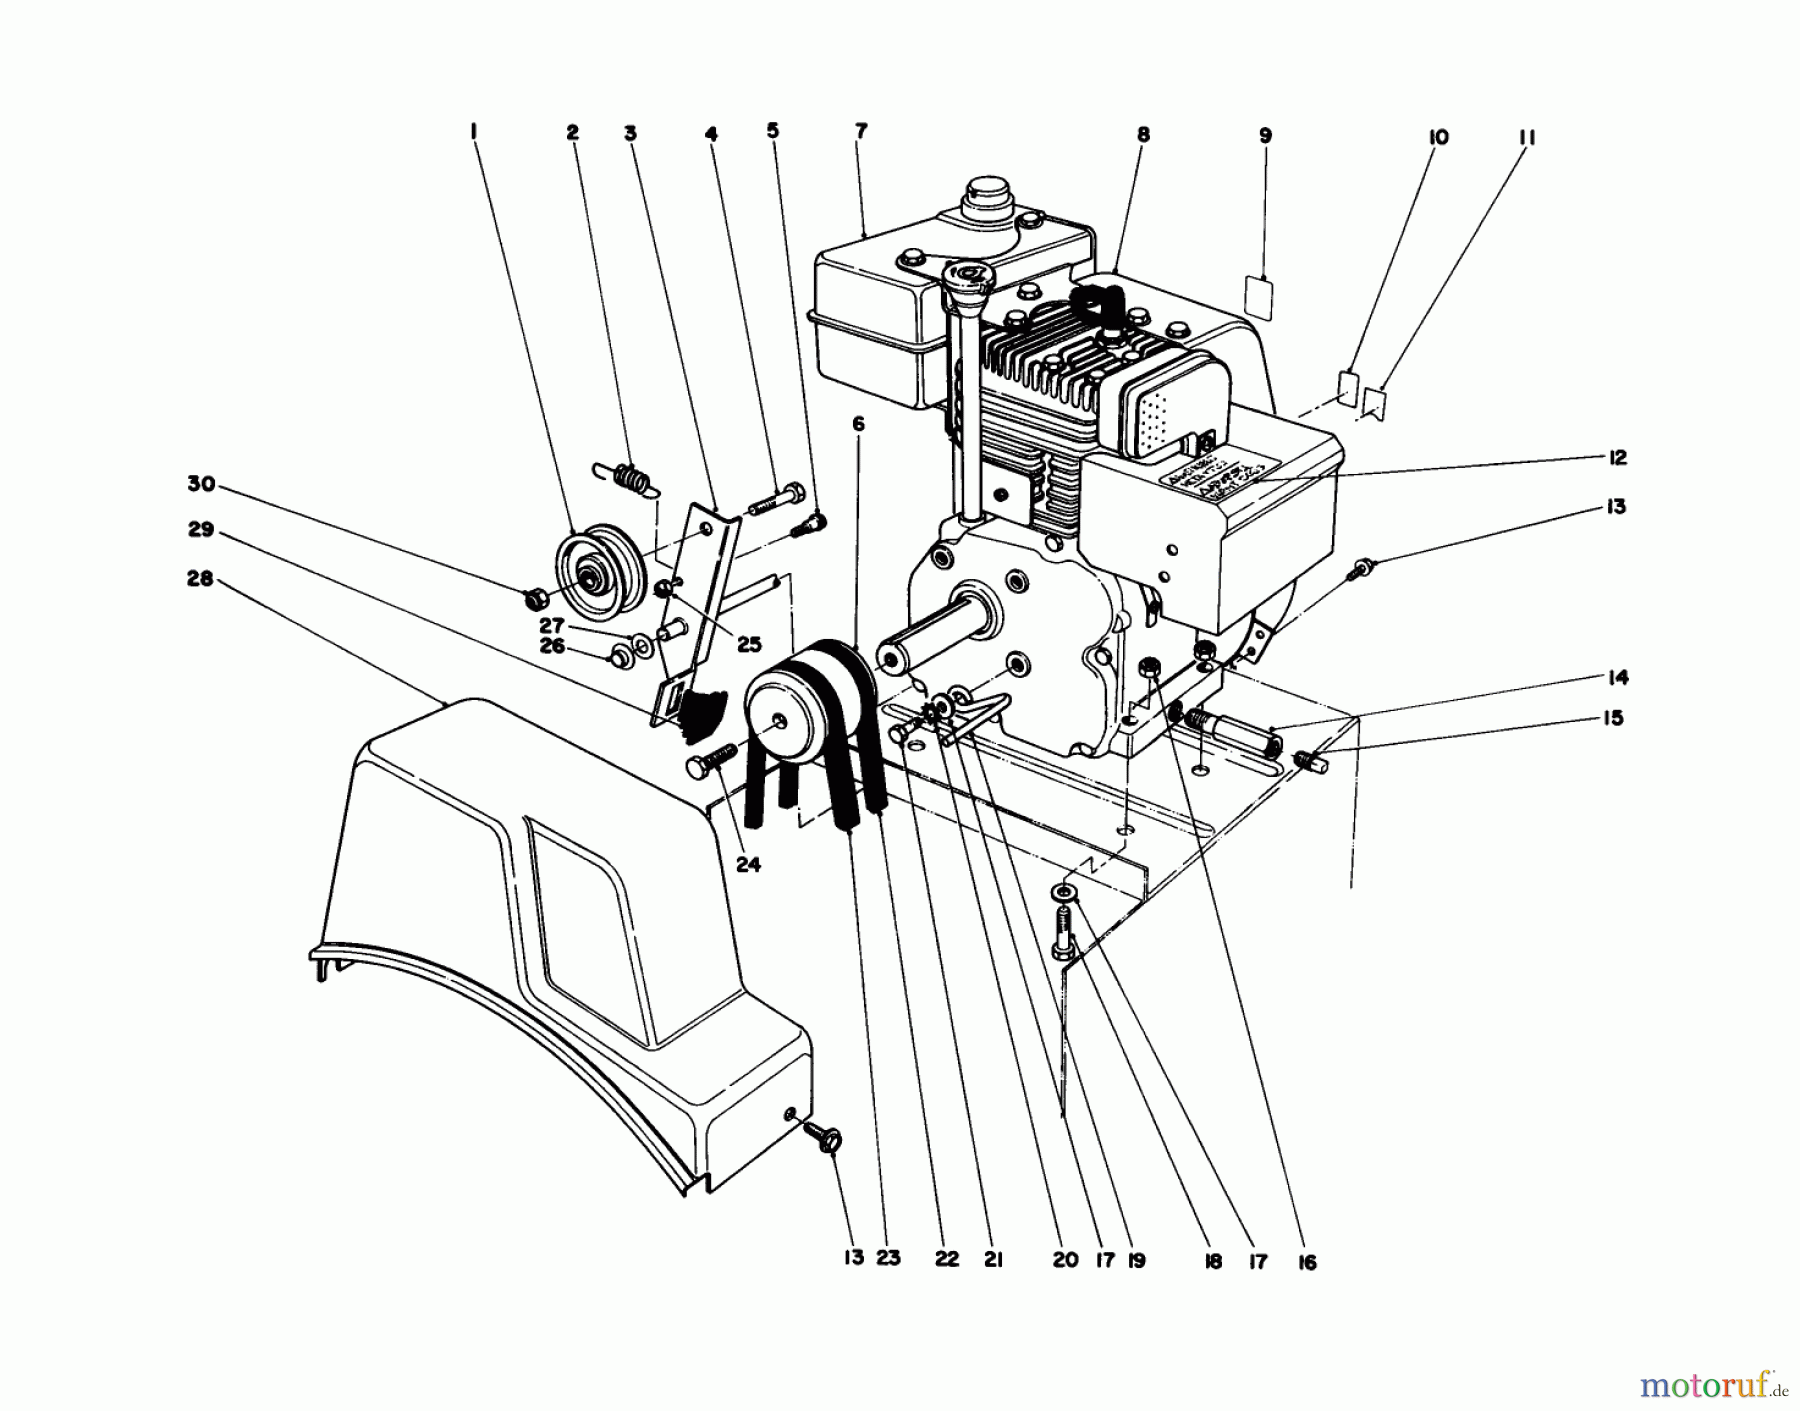  Toro Neu Snow Blowers/Snow Throwers Seite 1 38052 (521) - Toro 521 Snowthrower, 1985 (5000001-5999999) ENGINE ASSEMBLY